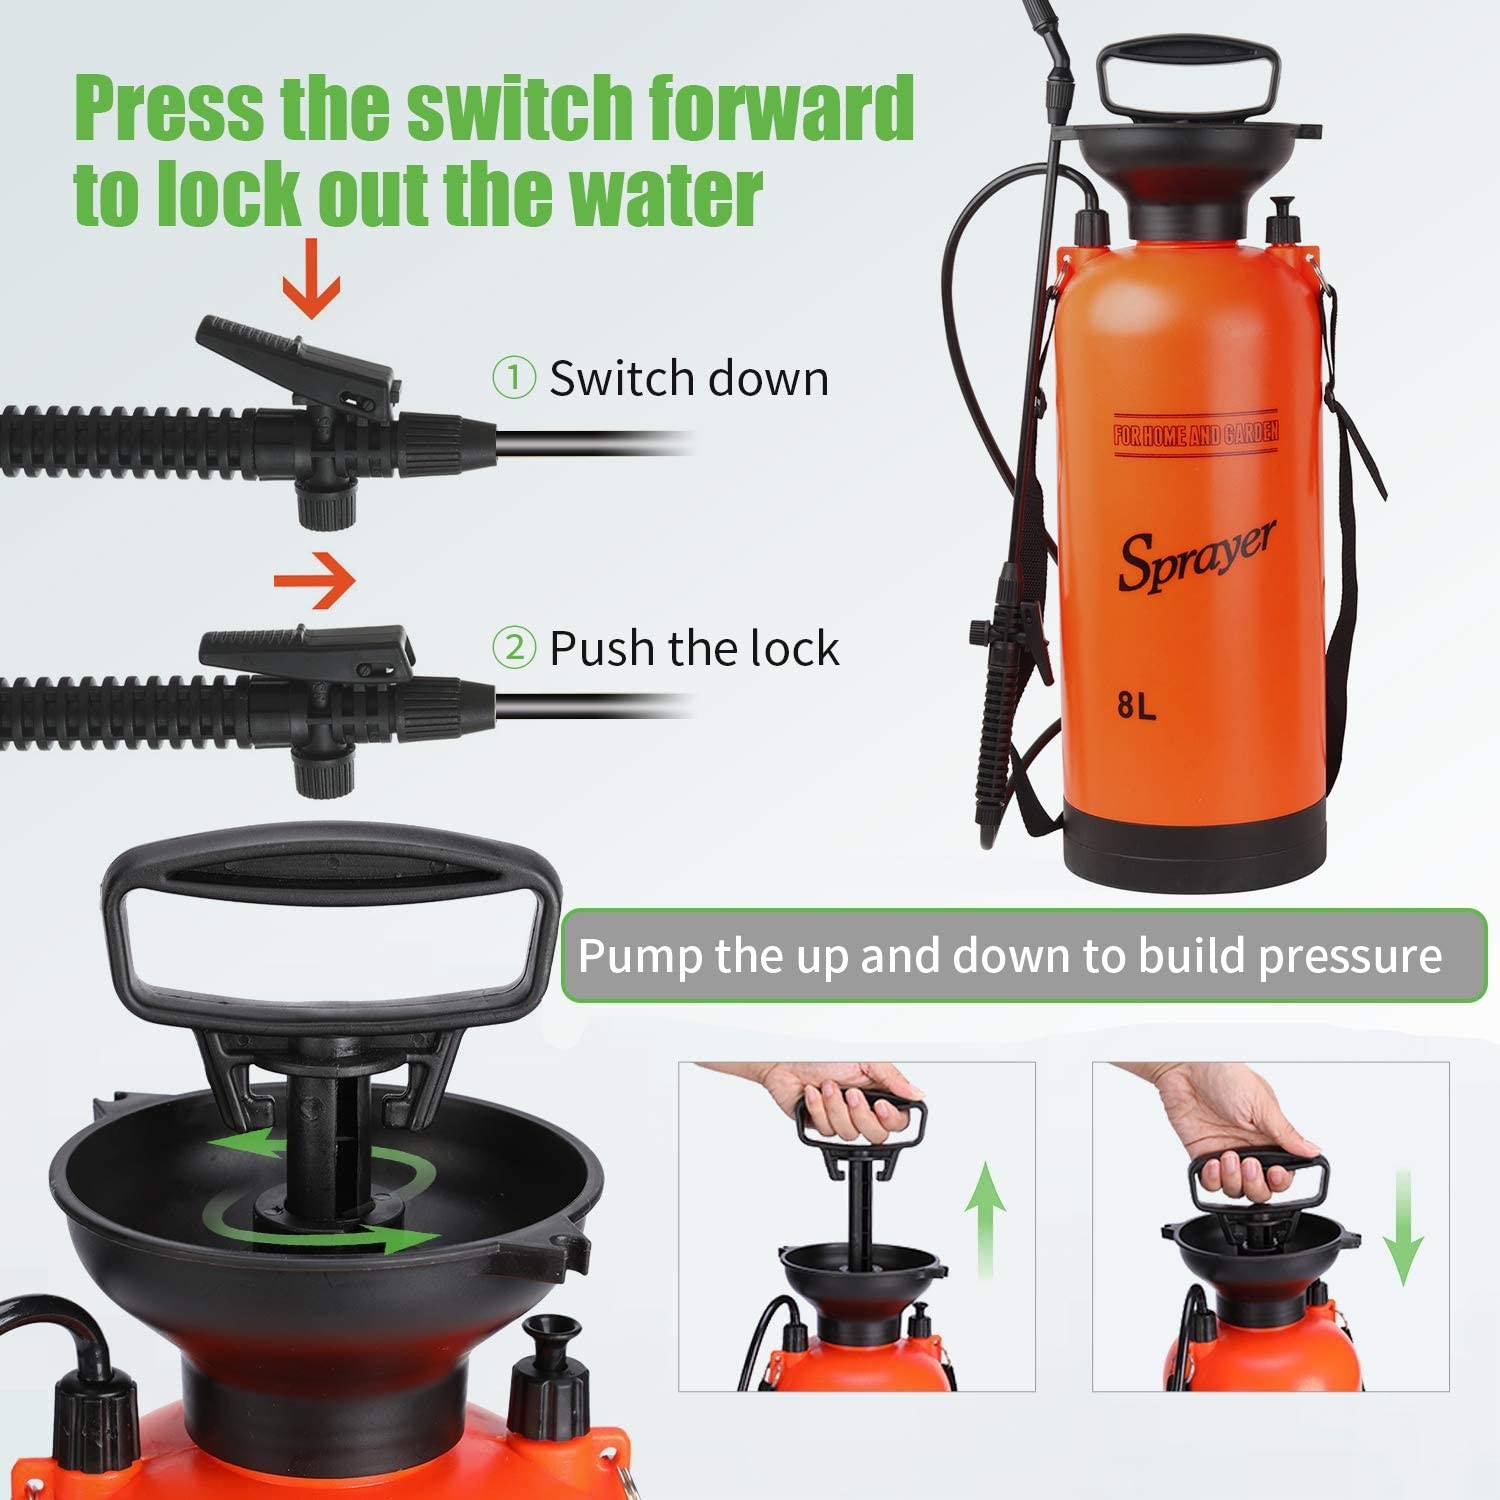 Garden Sprayer 2 Gallon Lawn Pressure Pump Sprayer with Adjustable Cone Nozzles and Portable Shoulder Strap